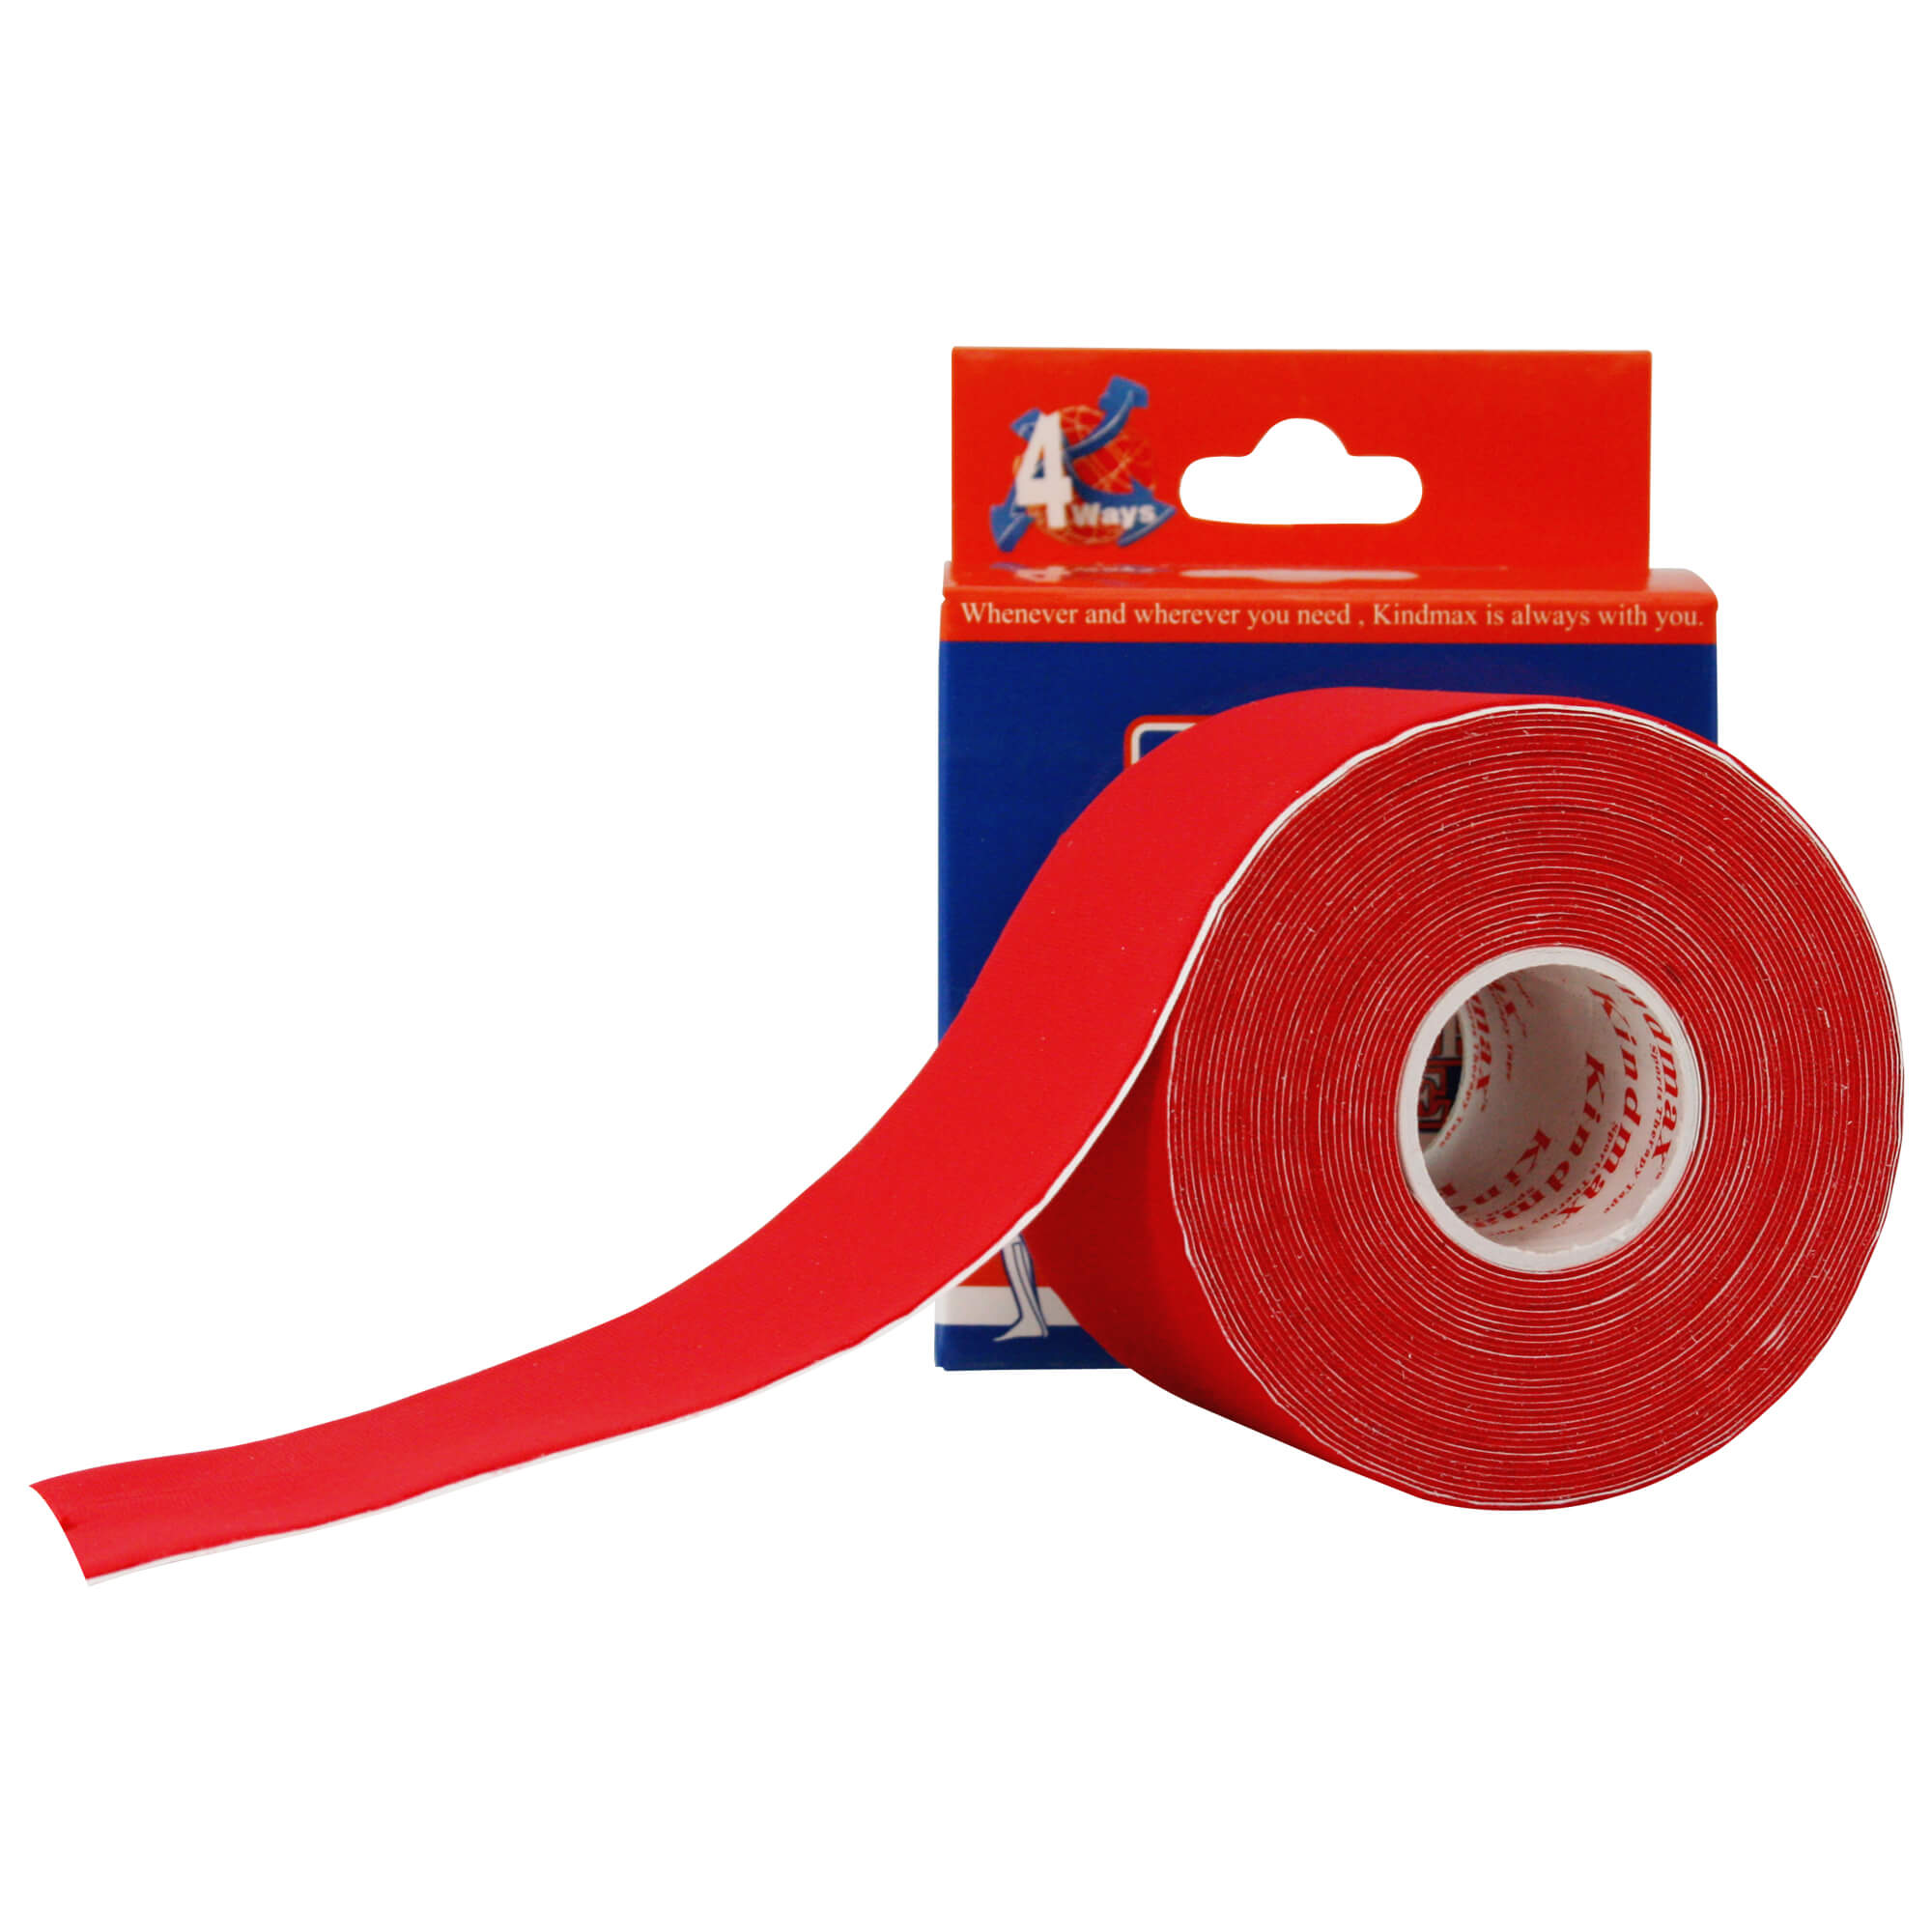 Kinesio tape Tapeverband Tape Sporttape taping Kinesio. Qualitativ hochwertiger elastischer Tapeverband. Verwendung als Physiotape sowie zur Unterstützung der Muskulatur. Maße: 5 m x 5 cm